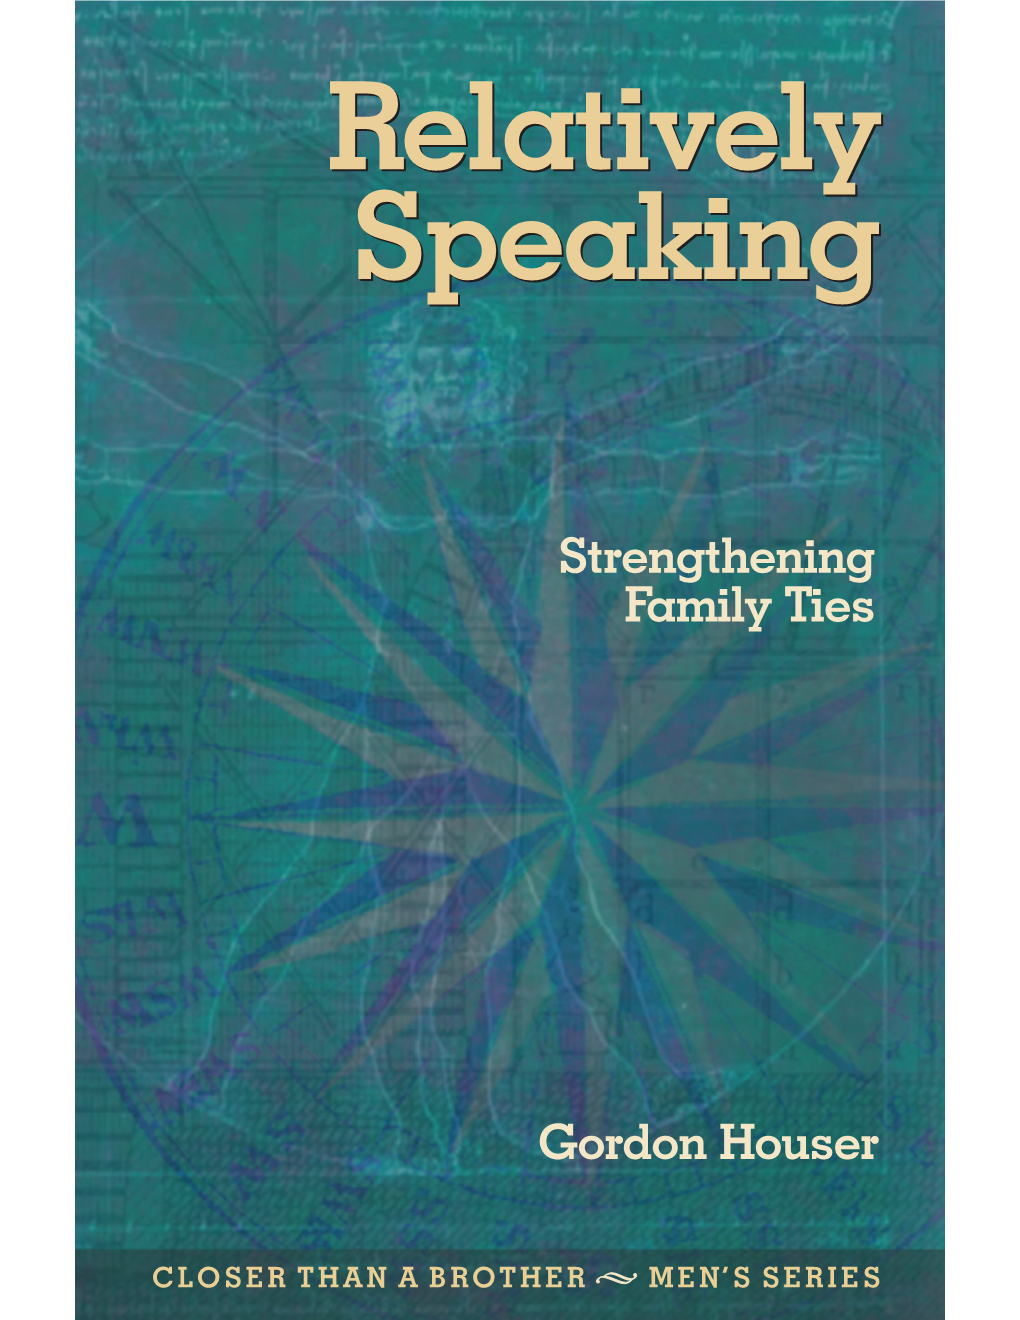 Gordon Houser Strengthening Family Ties